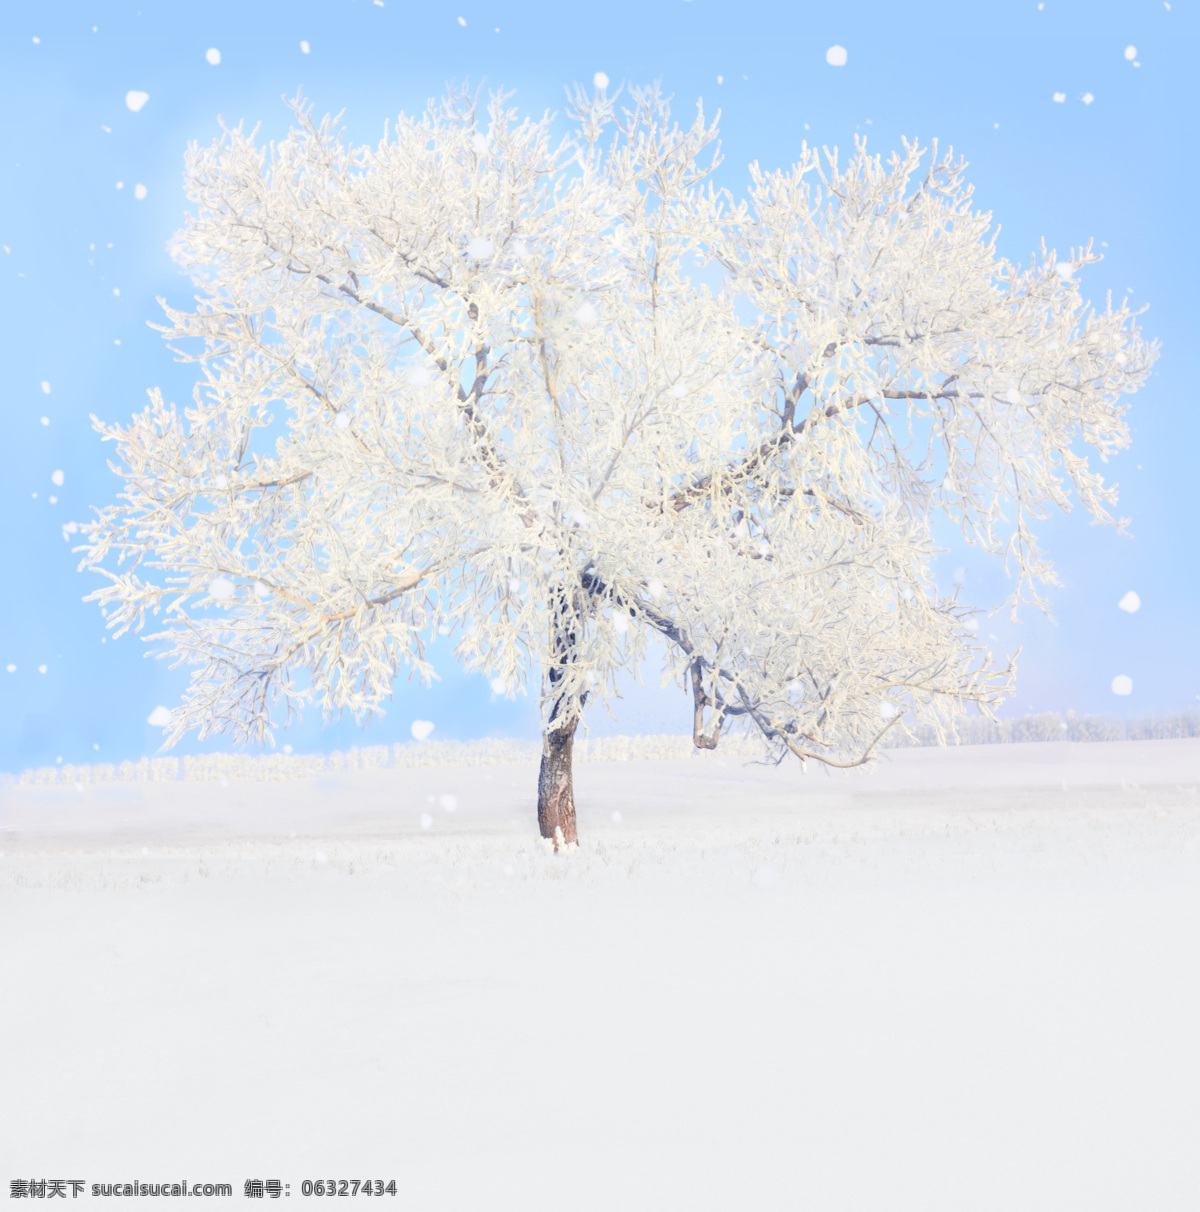 美丽 冬天 风景 美丽冬天风景 冬天雪景 雪地 雪地上的树 山水风景 风景图片